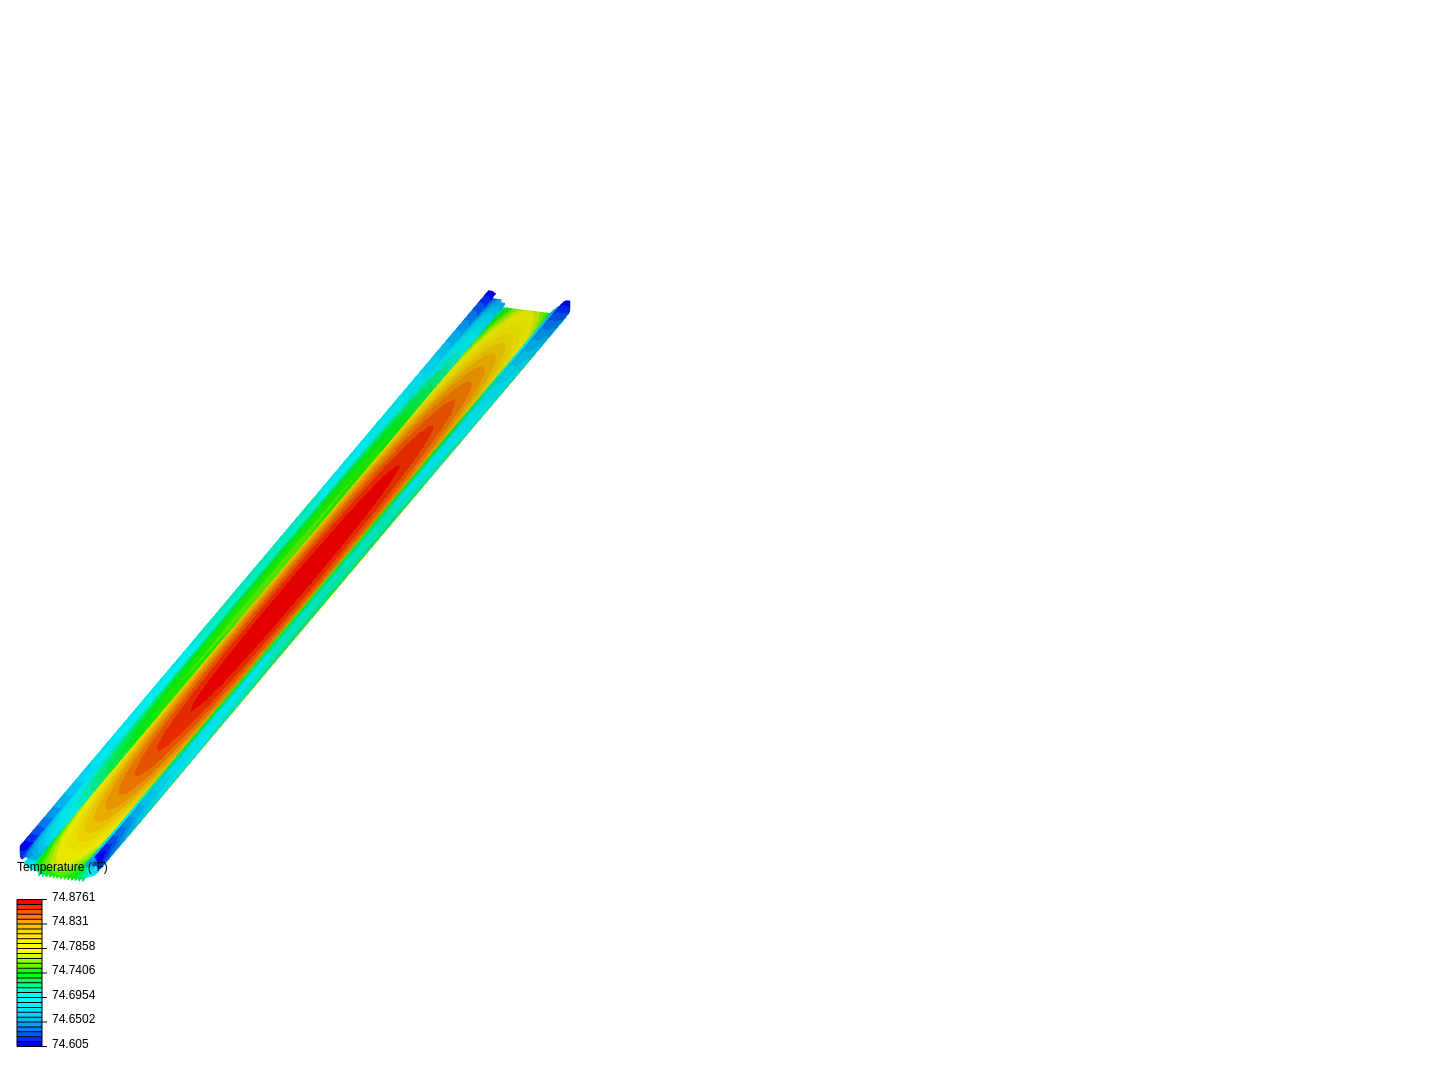 Heat Sink Thermal Analysis image